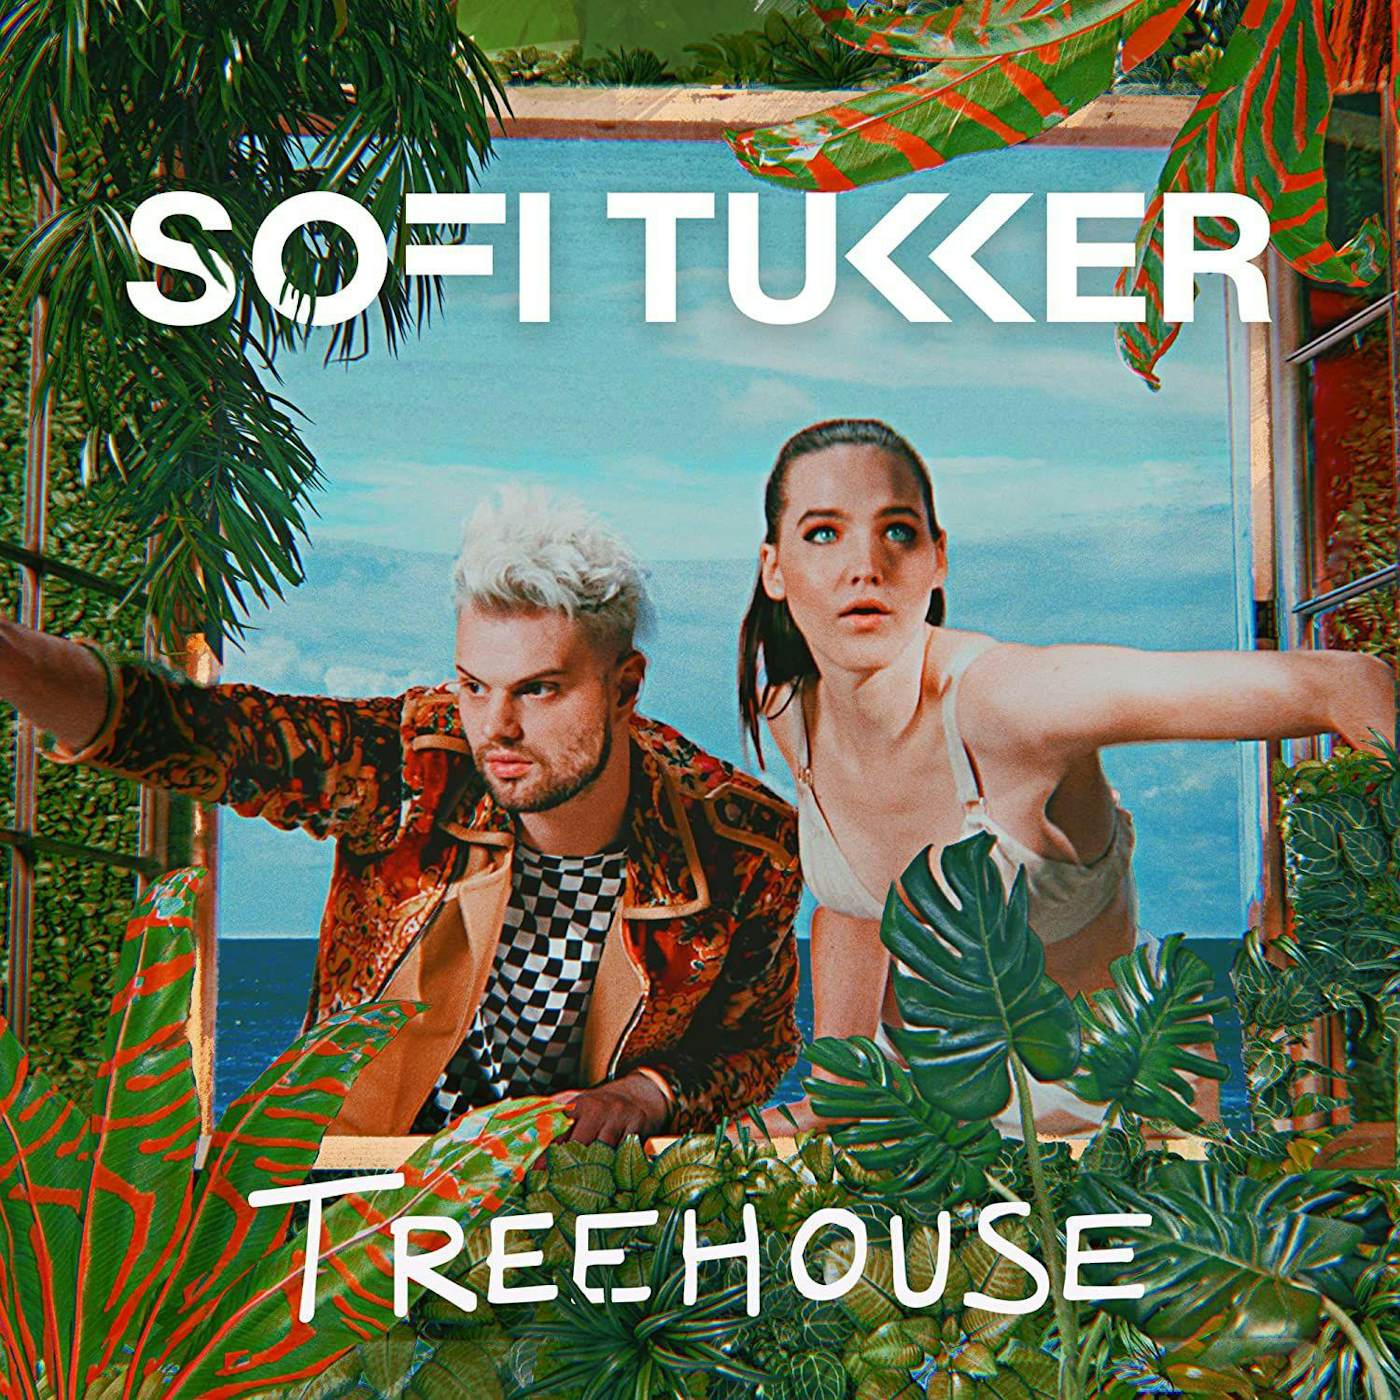 Sofi Tukker Treehouse Vinyl Record